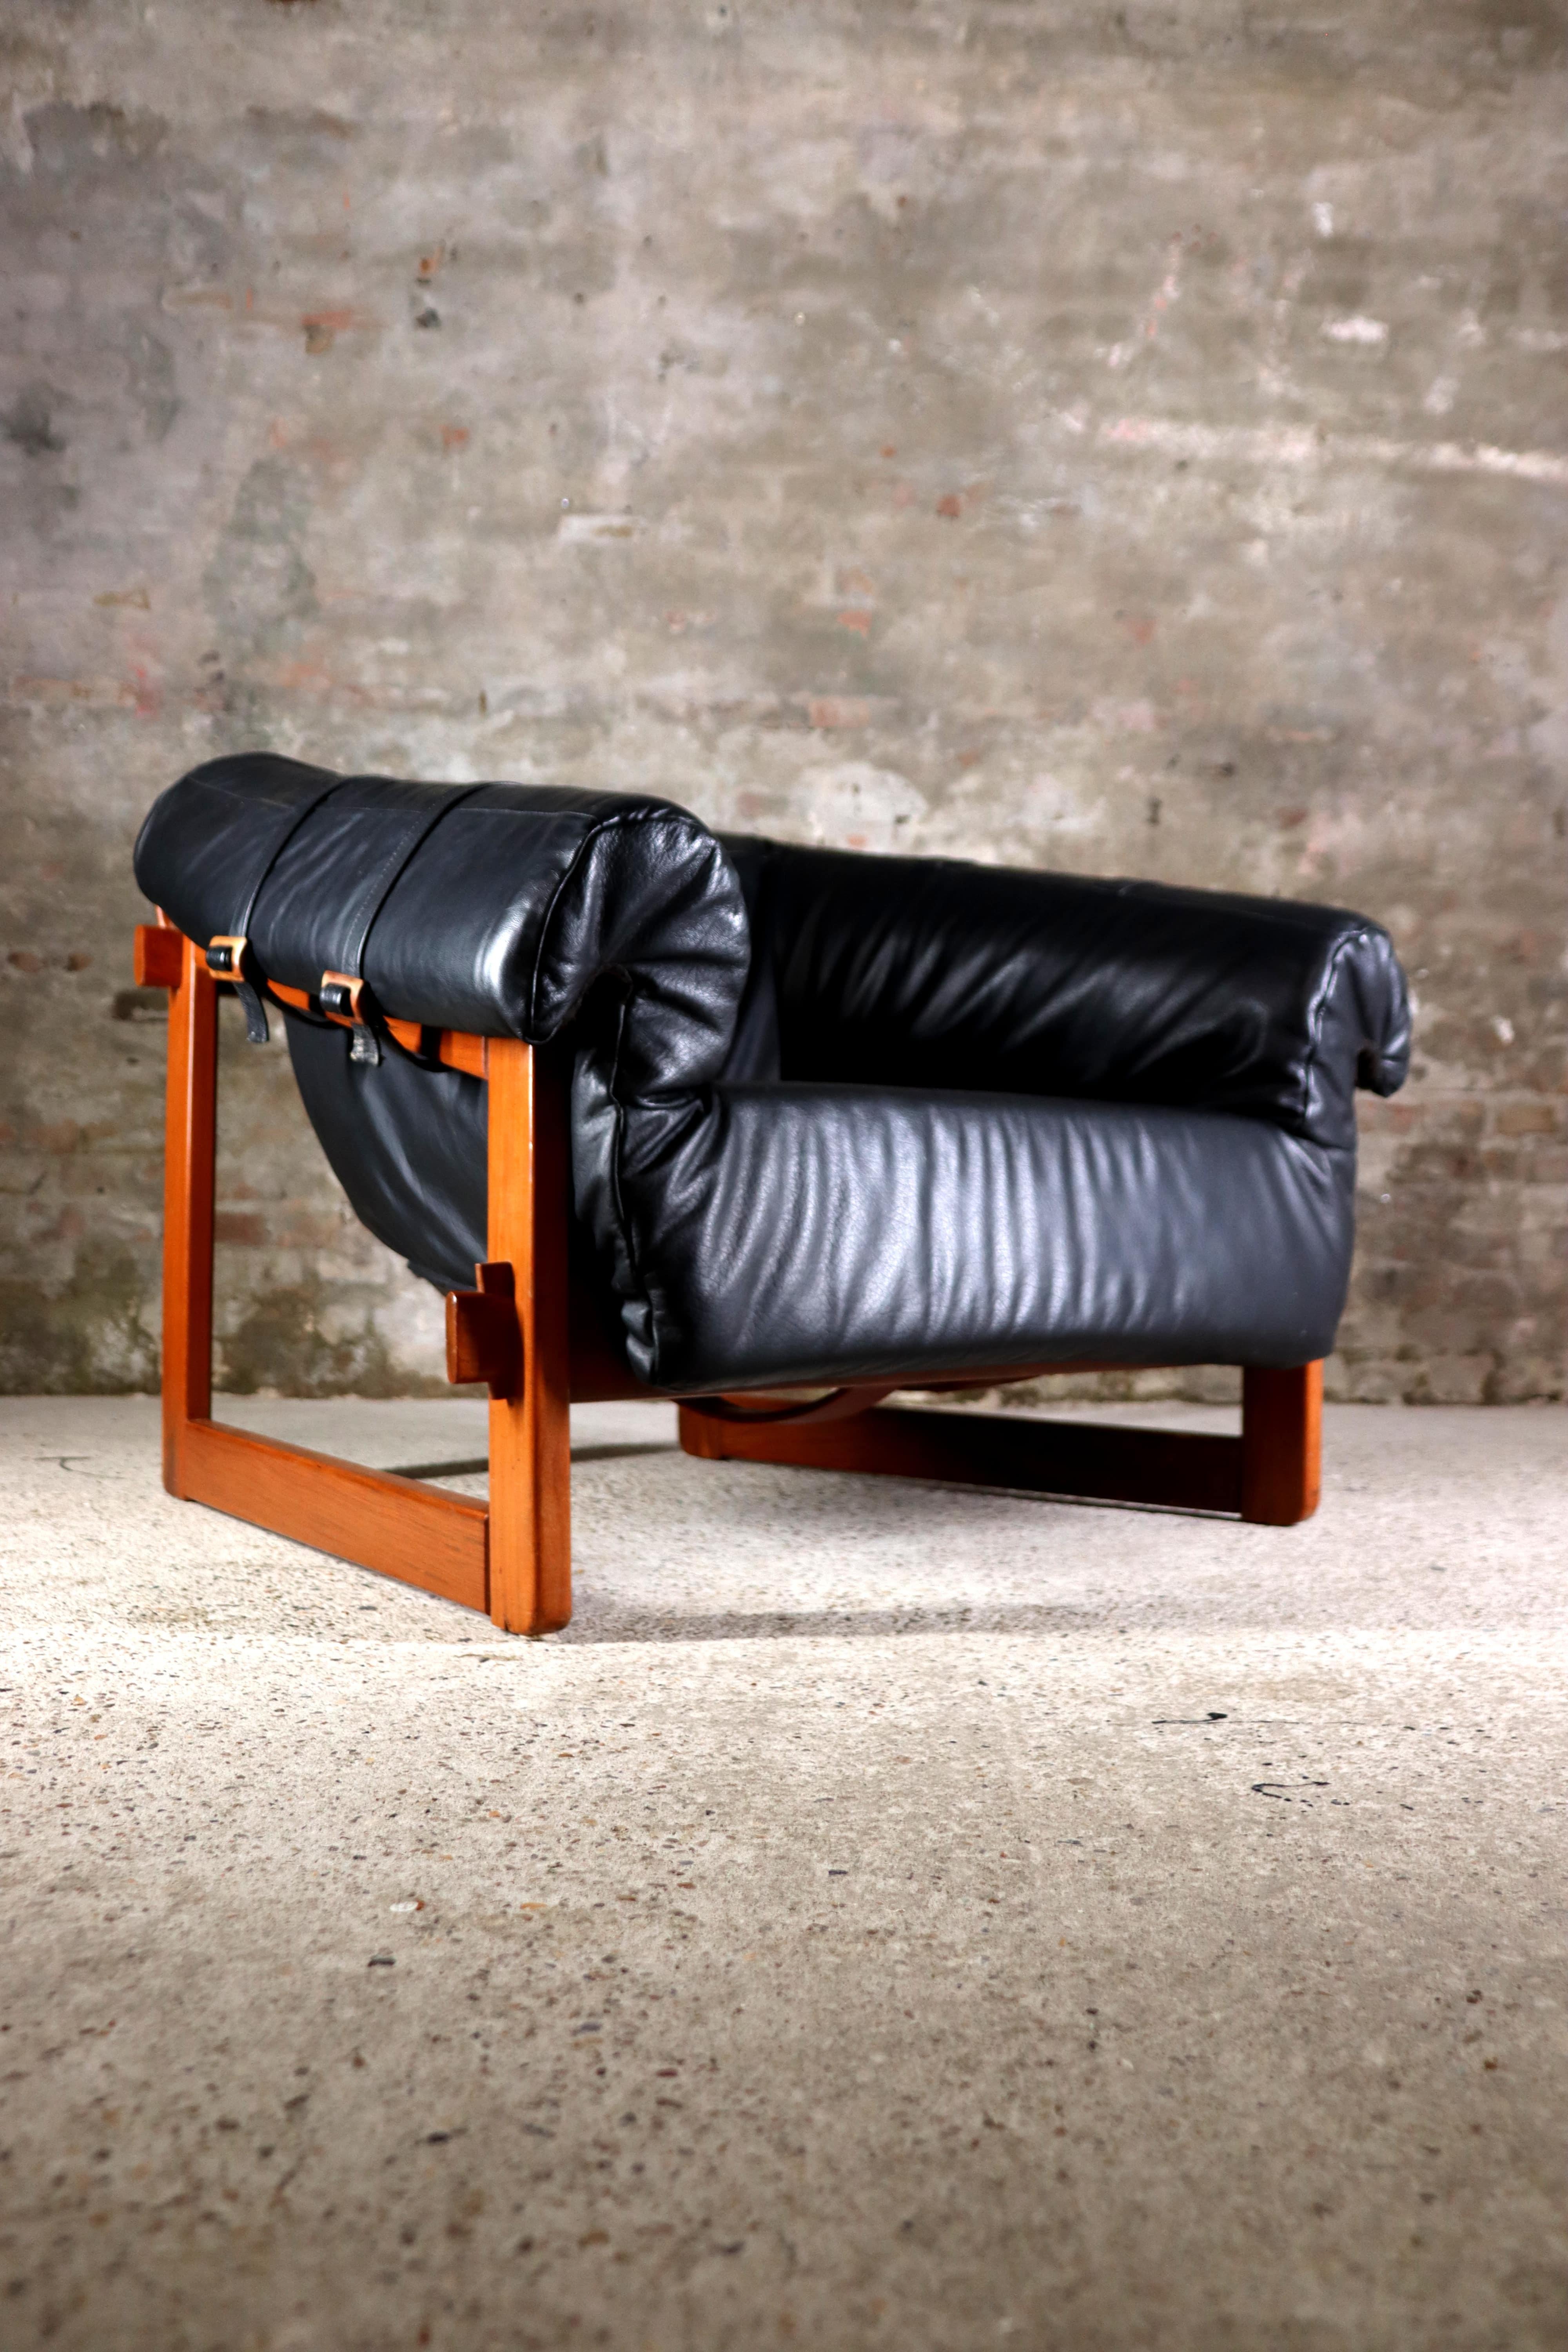 Dieser wahrhaft schöne Sessel heißt MP-91 und wurde von Percival Lafer entworfen. Es ist ein außergewöhnliches Möbelstück. Der Stuhl ist aus Rosenholz gefertigt  und hat einen Ledersitz, der unvergleichlichen Komfort bietet. Das Design des Stuhls